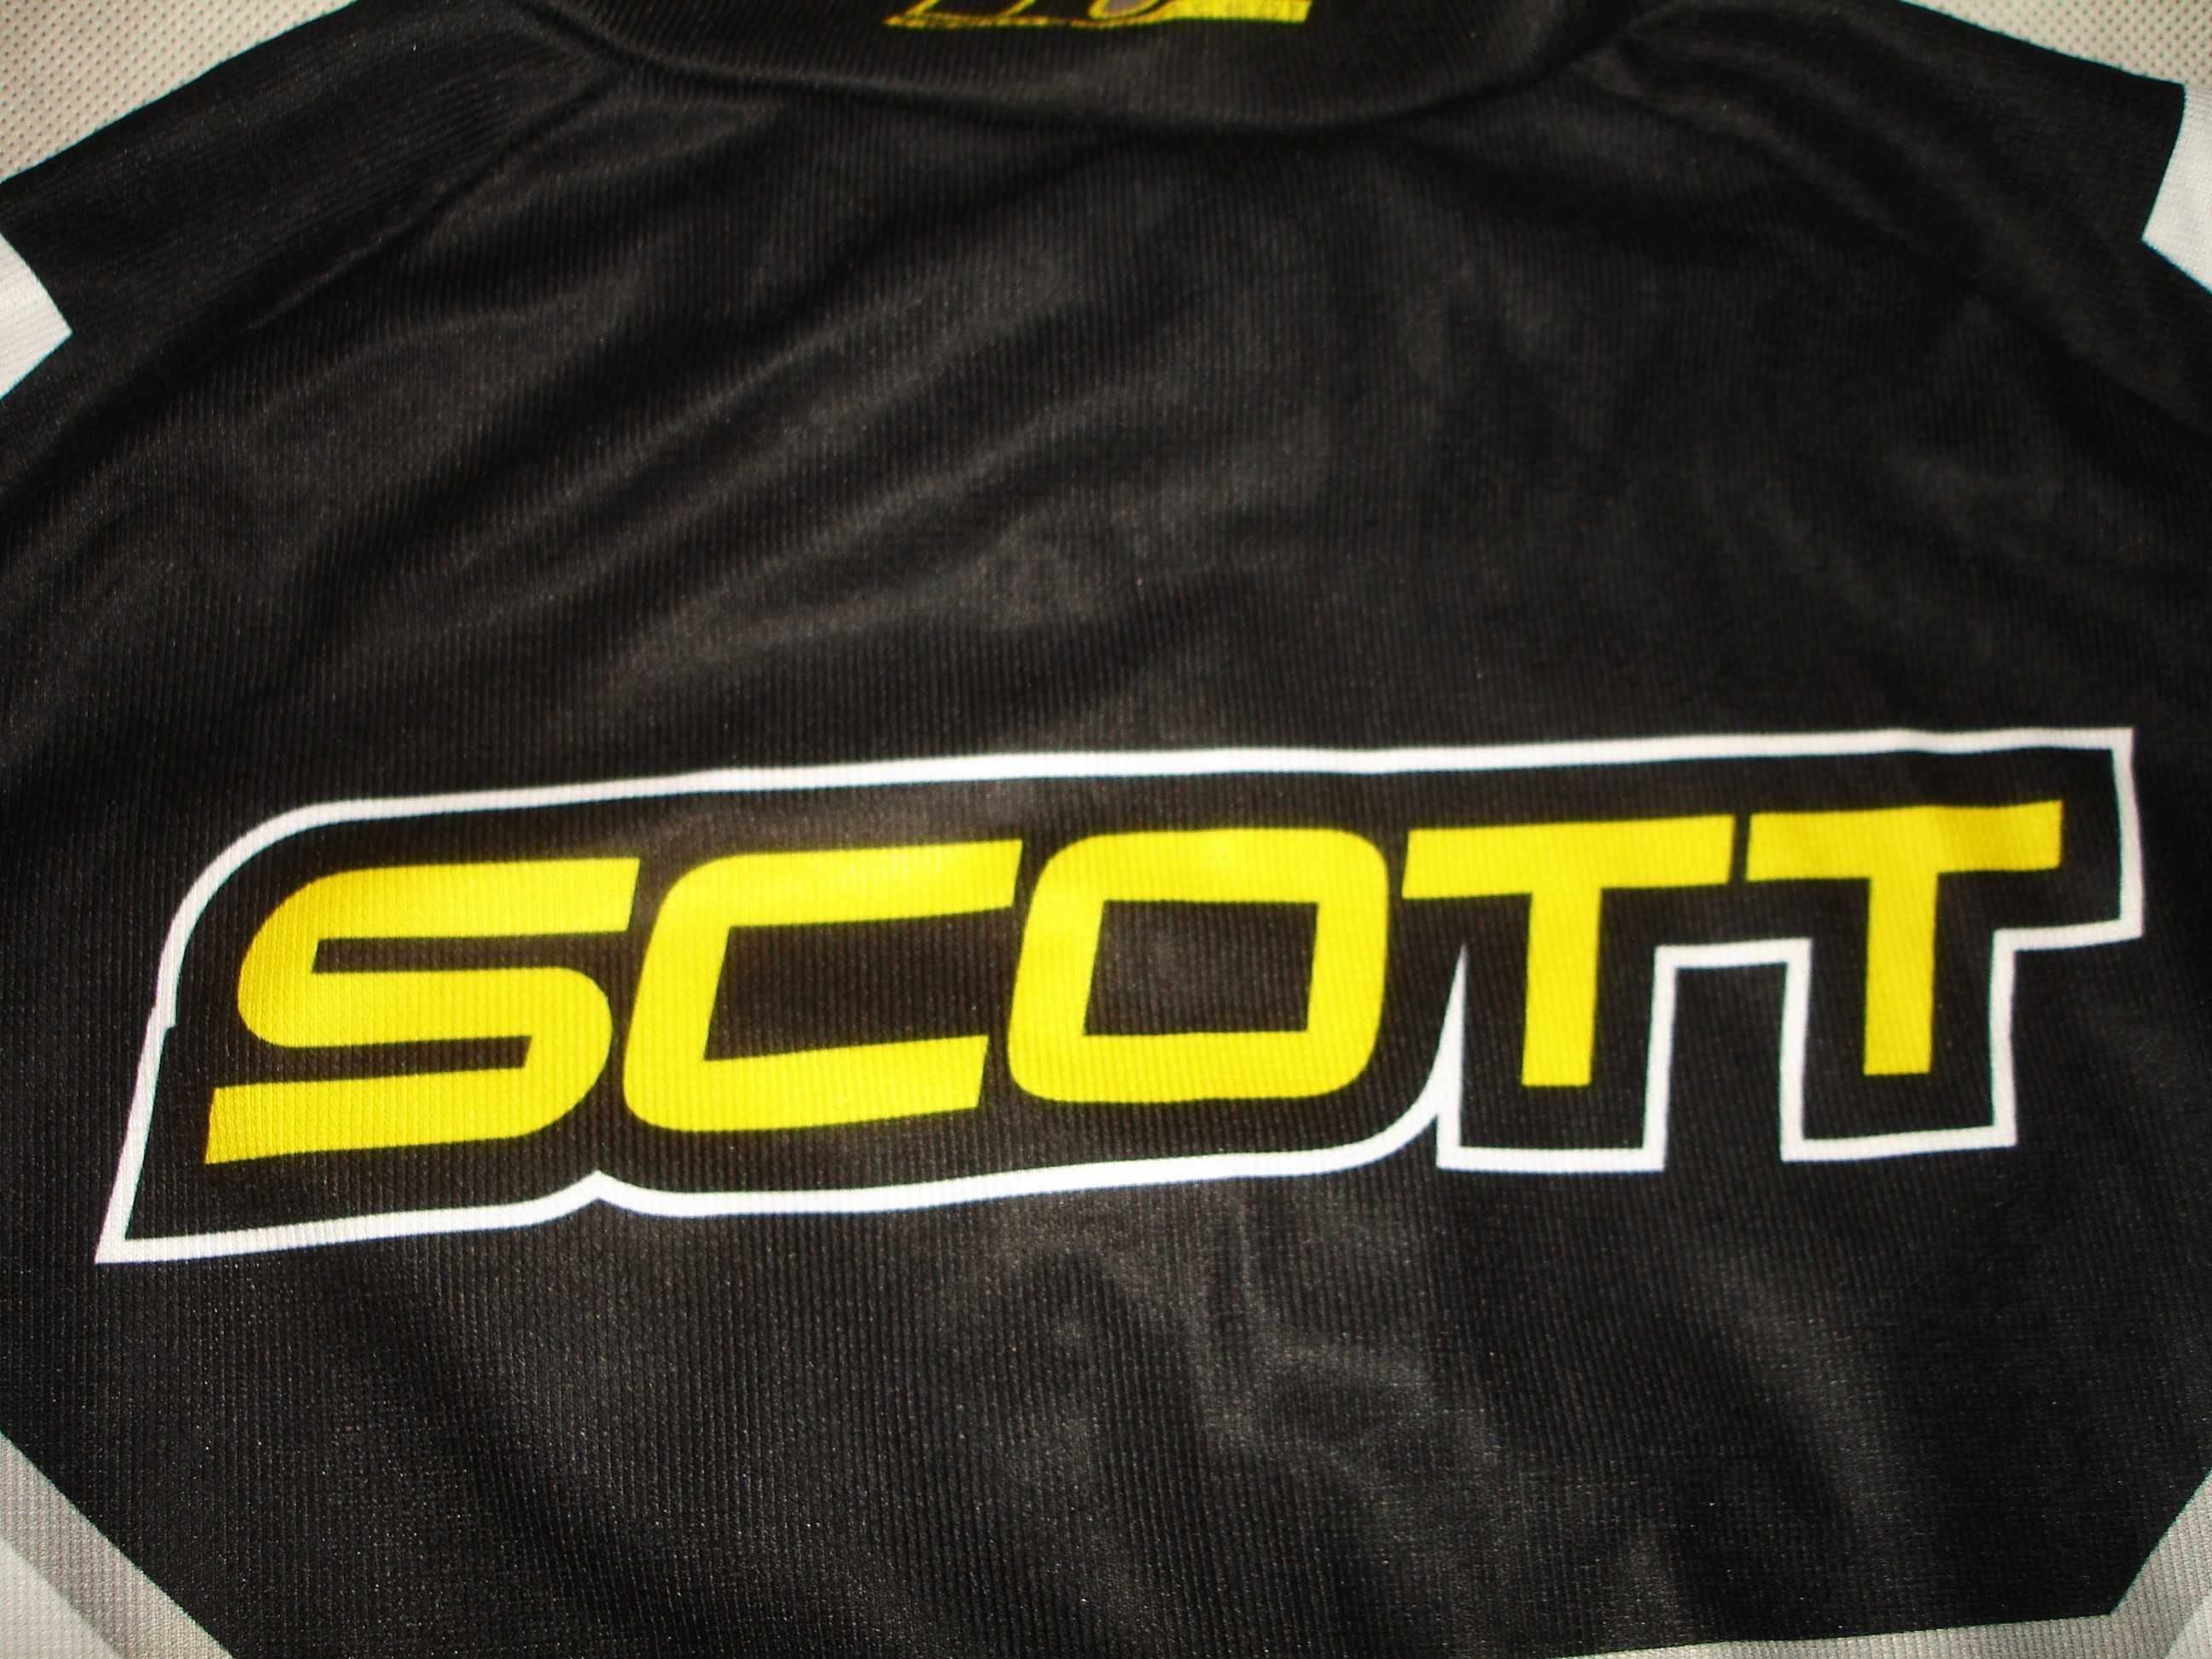 SCOTT racing concept - koszulka kolarska - rozmiar L/XL